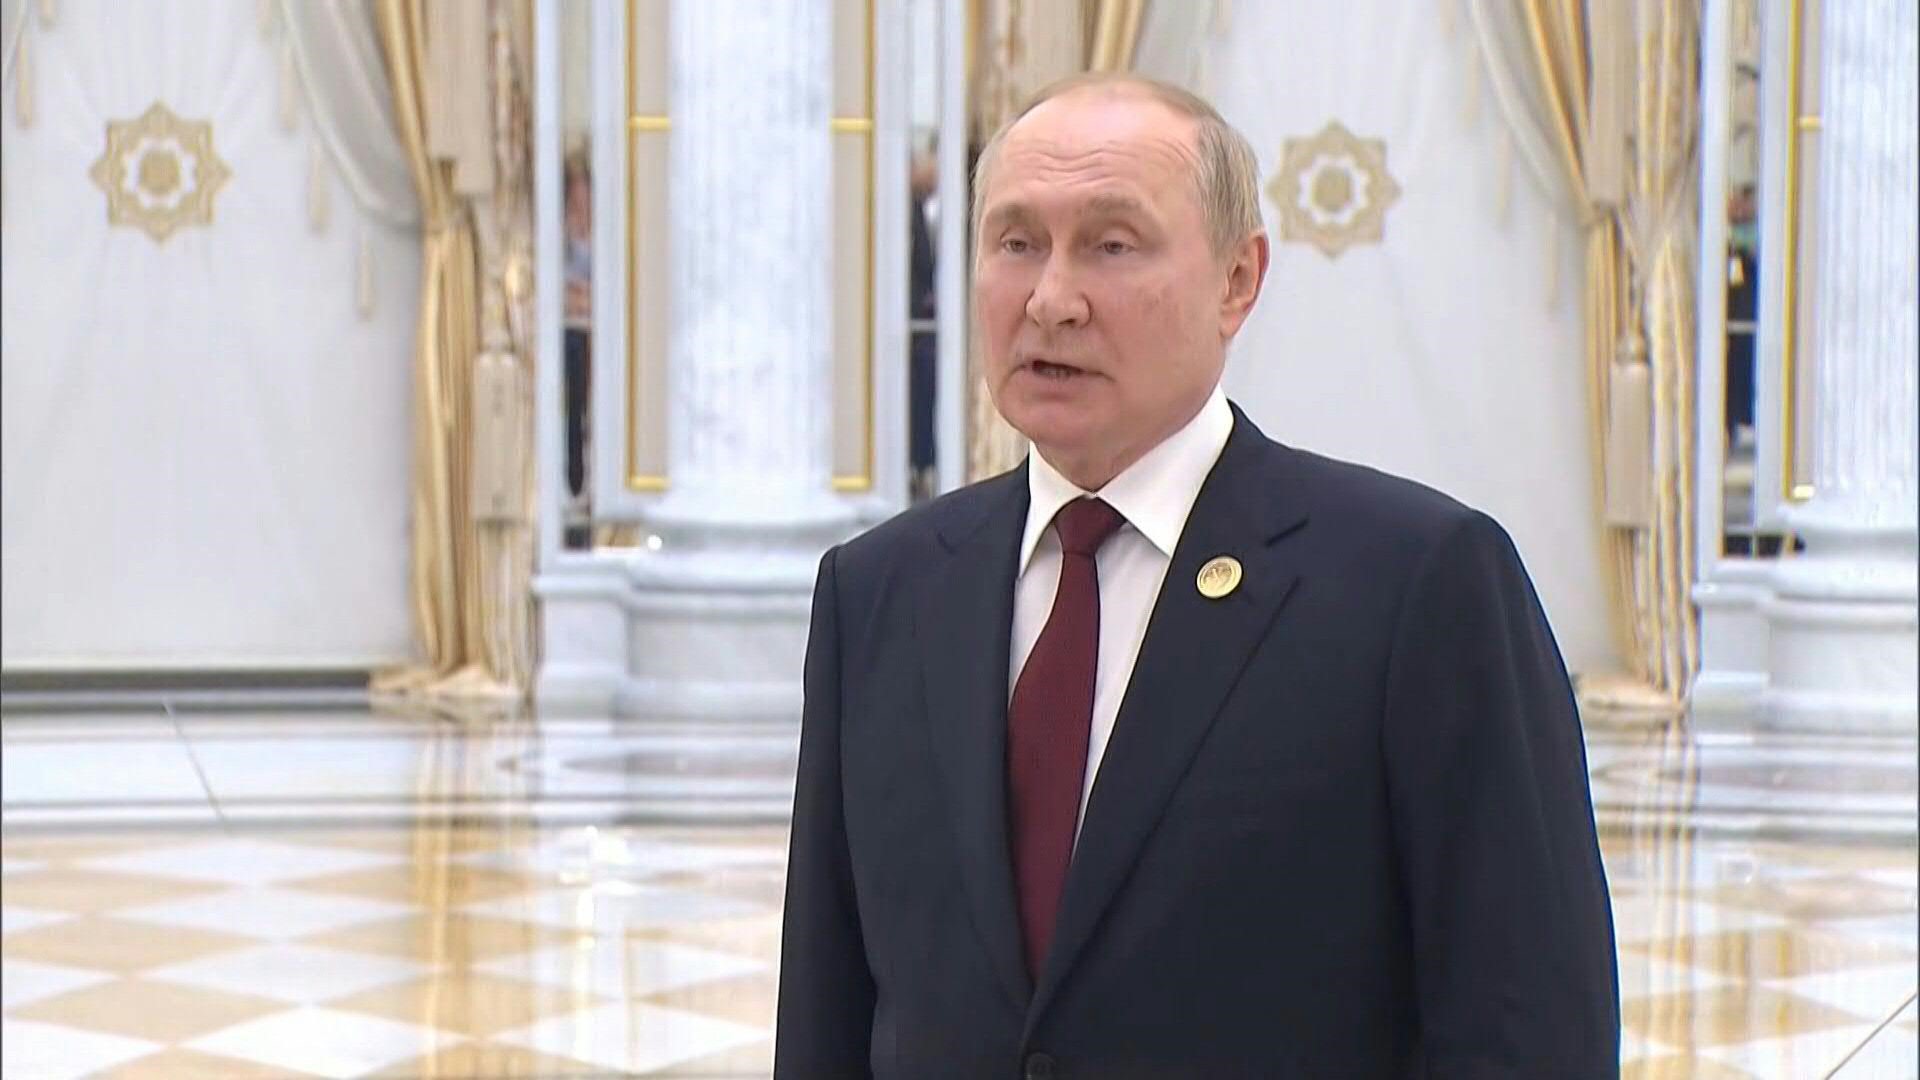 El presidente de Rusia, Vladimir Putin, denunció el miércoles las "ambiciones imperiales" de la OTAN que busca, según dijo, afirmar su "hegemonía" a través del conflicto en Ucrania